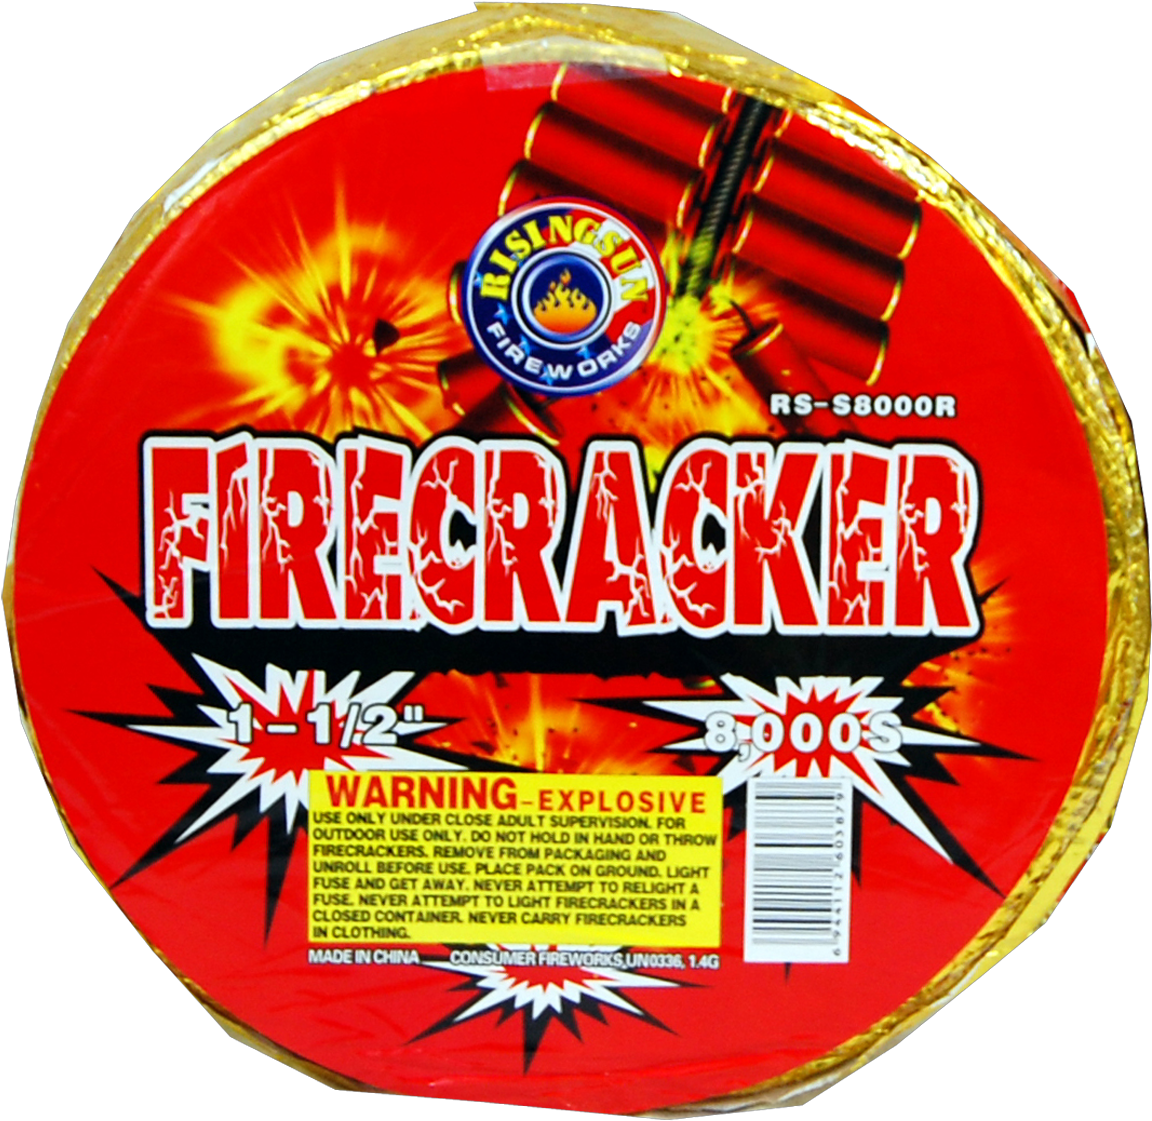 Firecracker Pack Label8000 Rolls